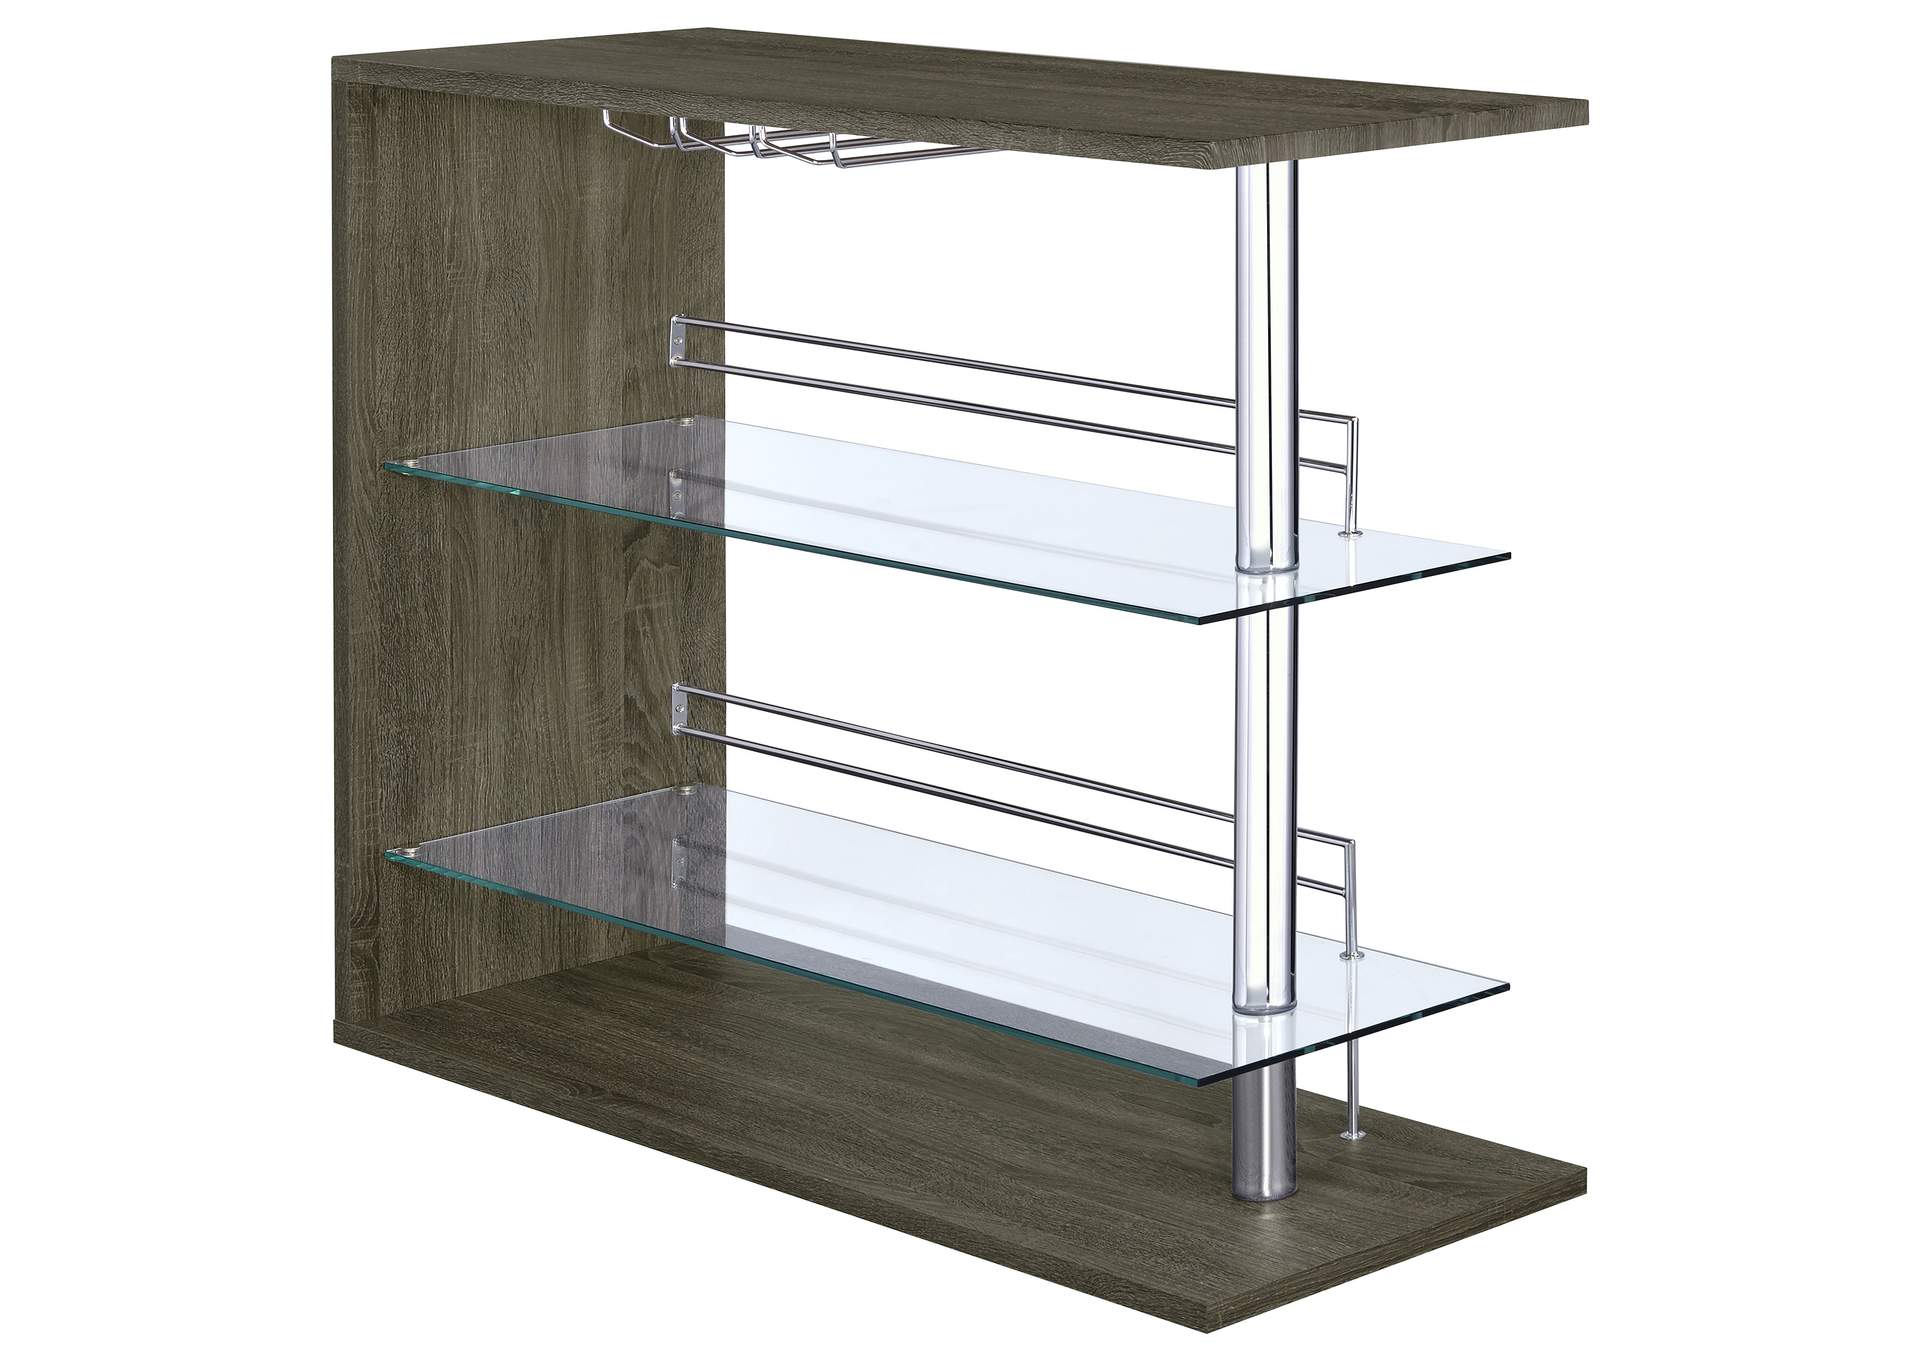 Prescott Rectangular 2-shelf Bar Unit Grey,Coaster Furniture